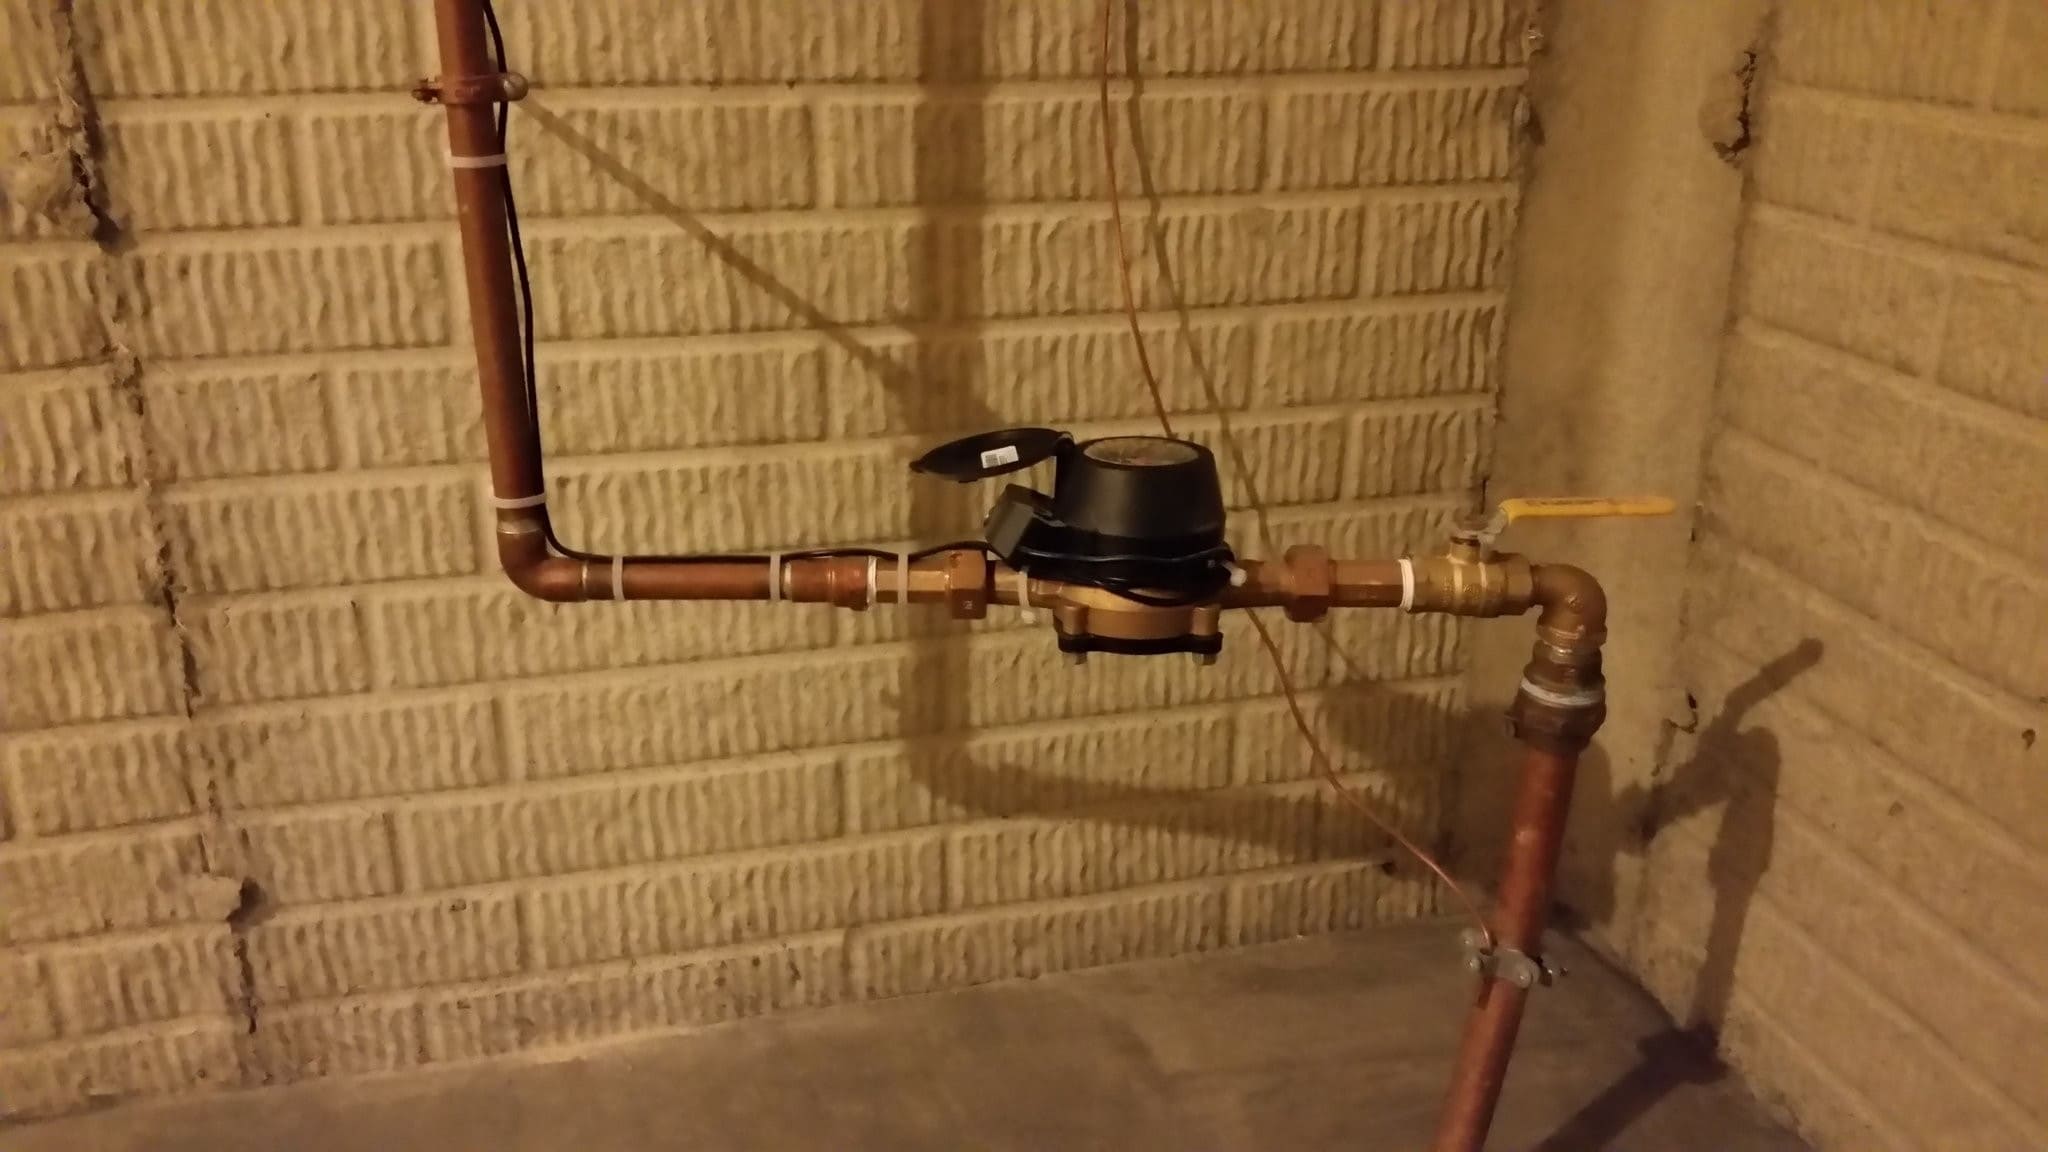 How To Hide Water Meter In Basement